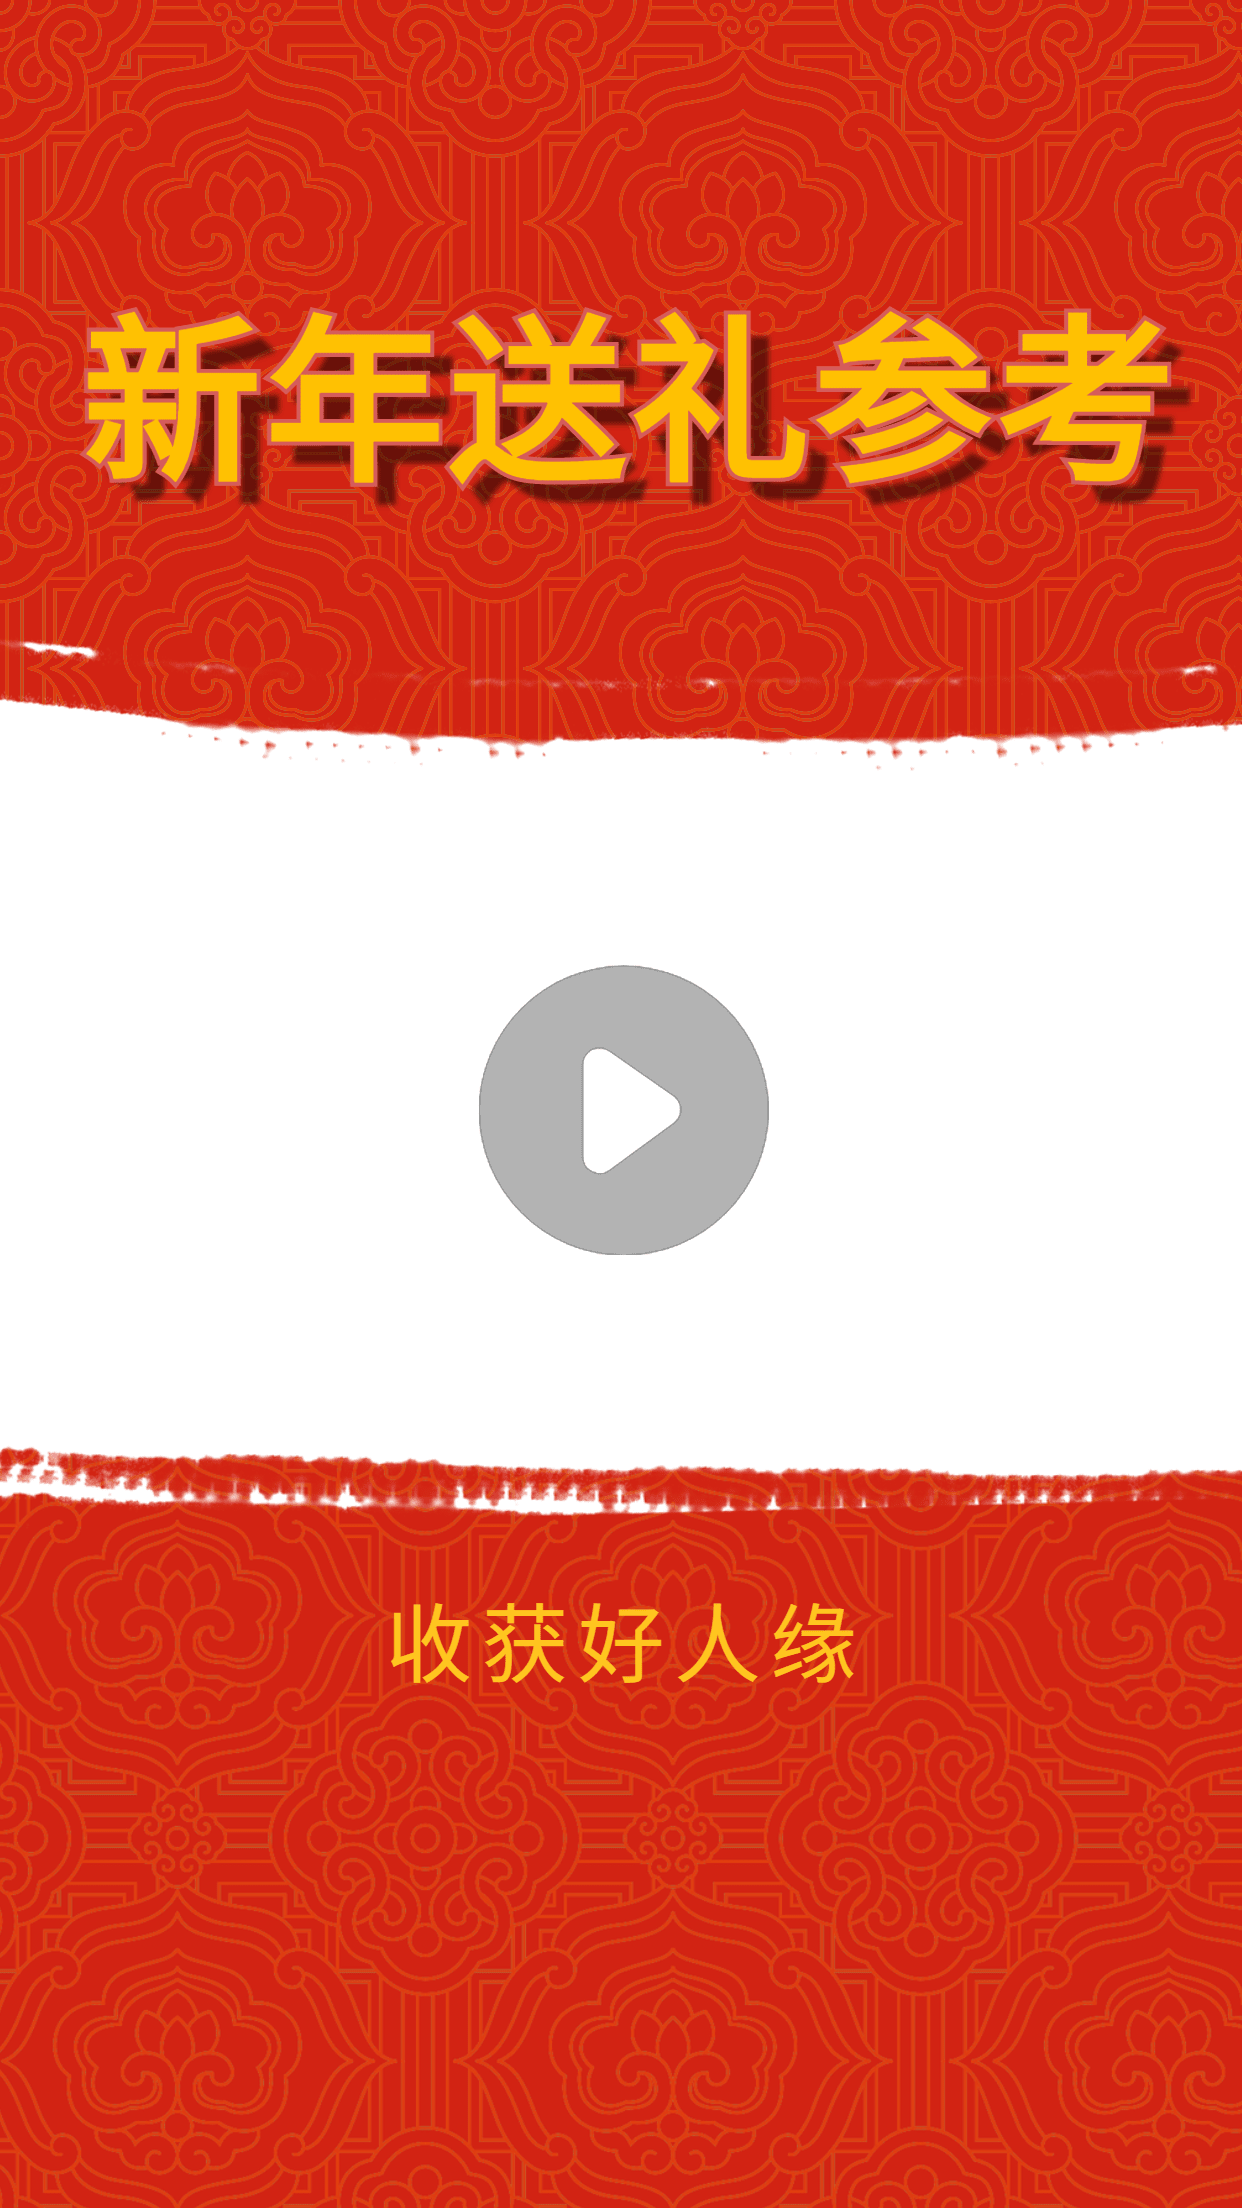 春节档电影分享推荐娱乐视频边框